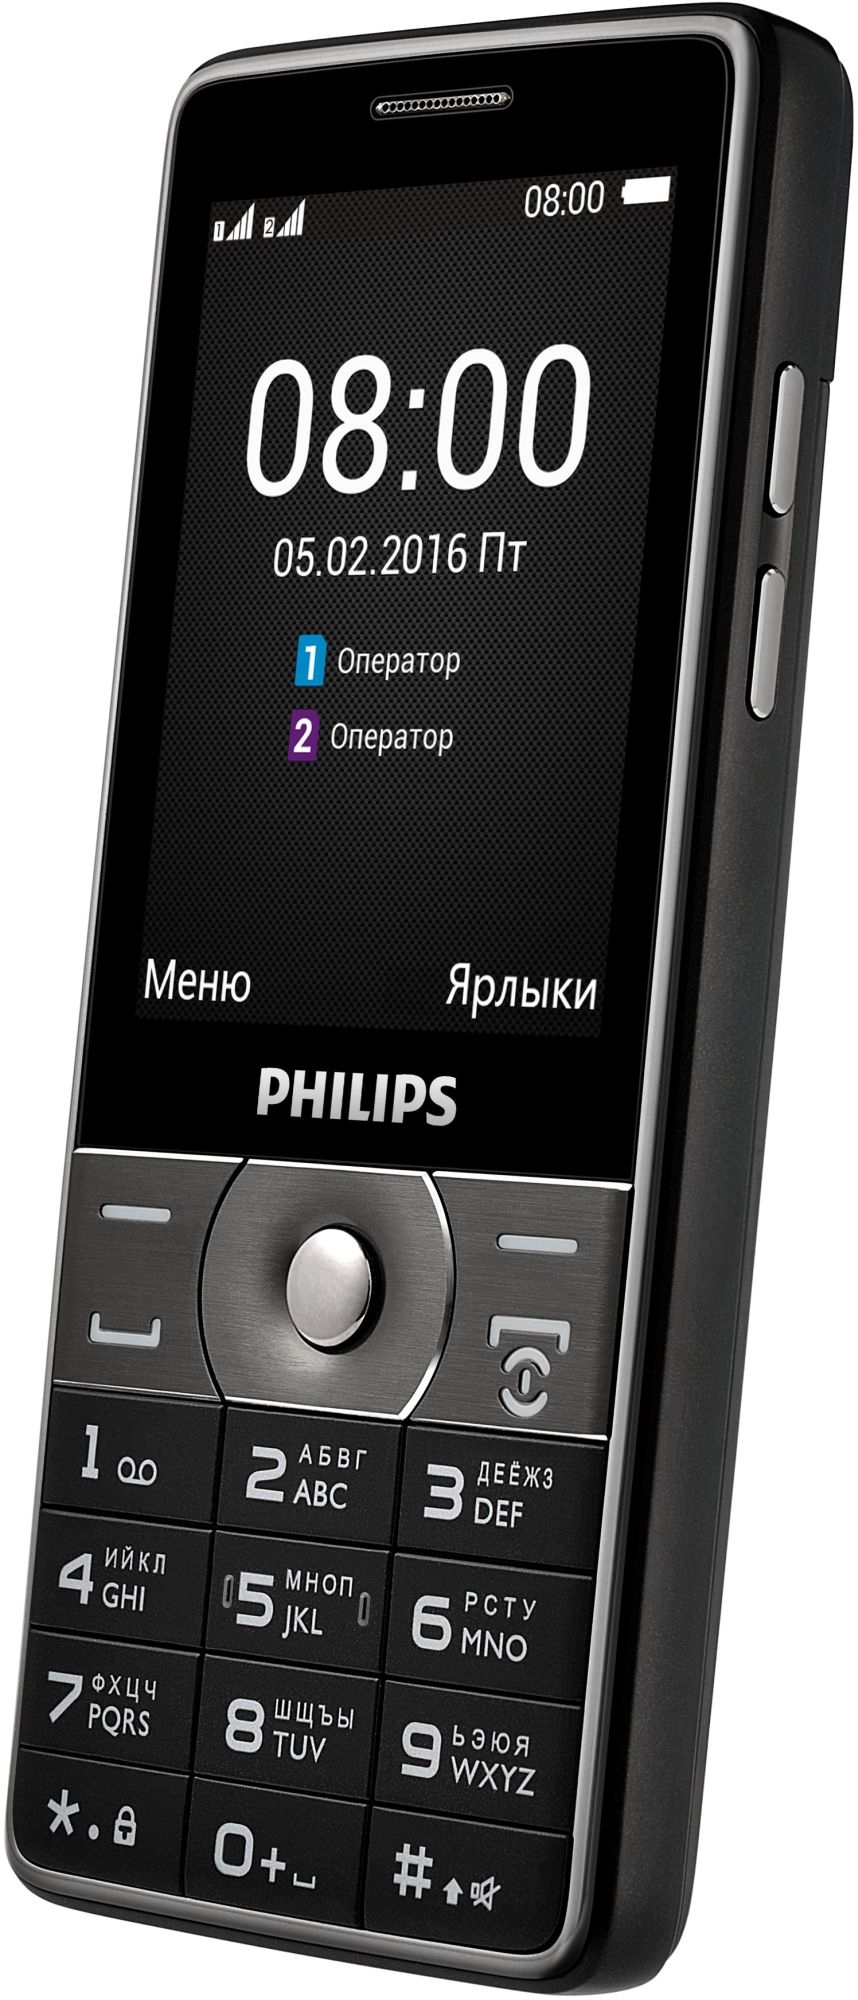 Филипс кнопочный цена. Philips Xenium e570. Philips Xenium e570 Dark Grey. Телефон сотовый Philips Xenium e570 черный. Philips Xenium Philips e570.